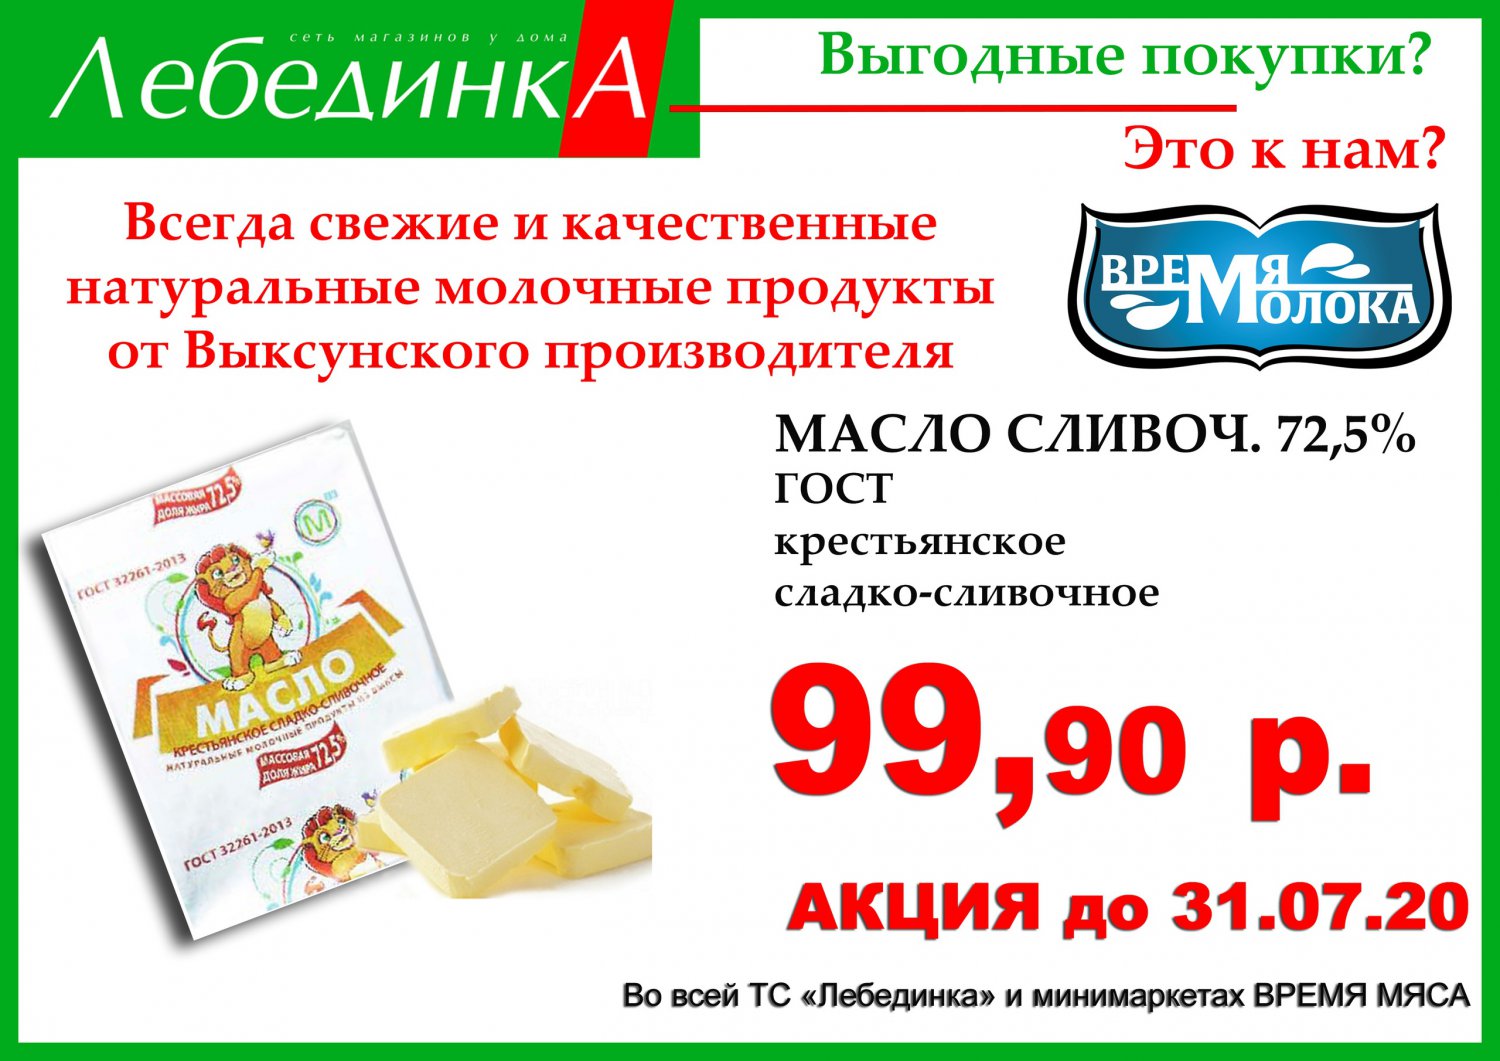 Сливочное масло в «Лебединке» — за 99,9 рублей